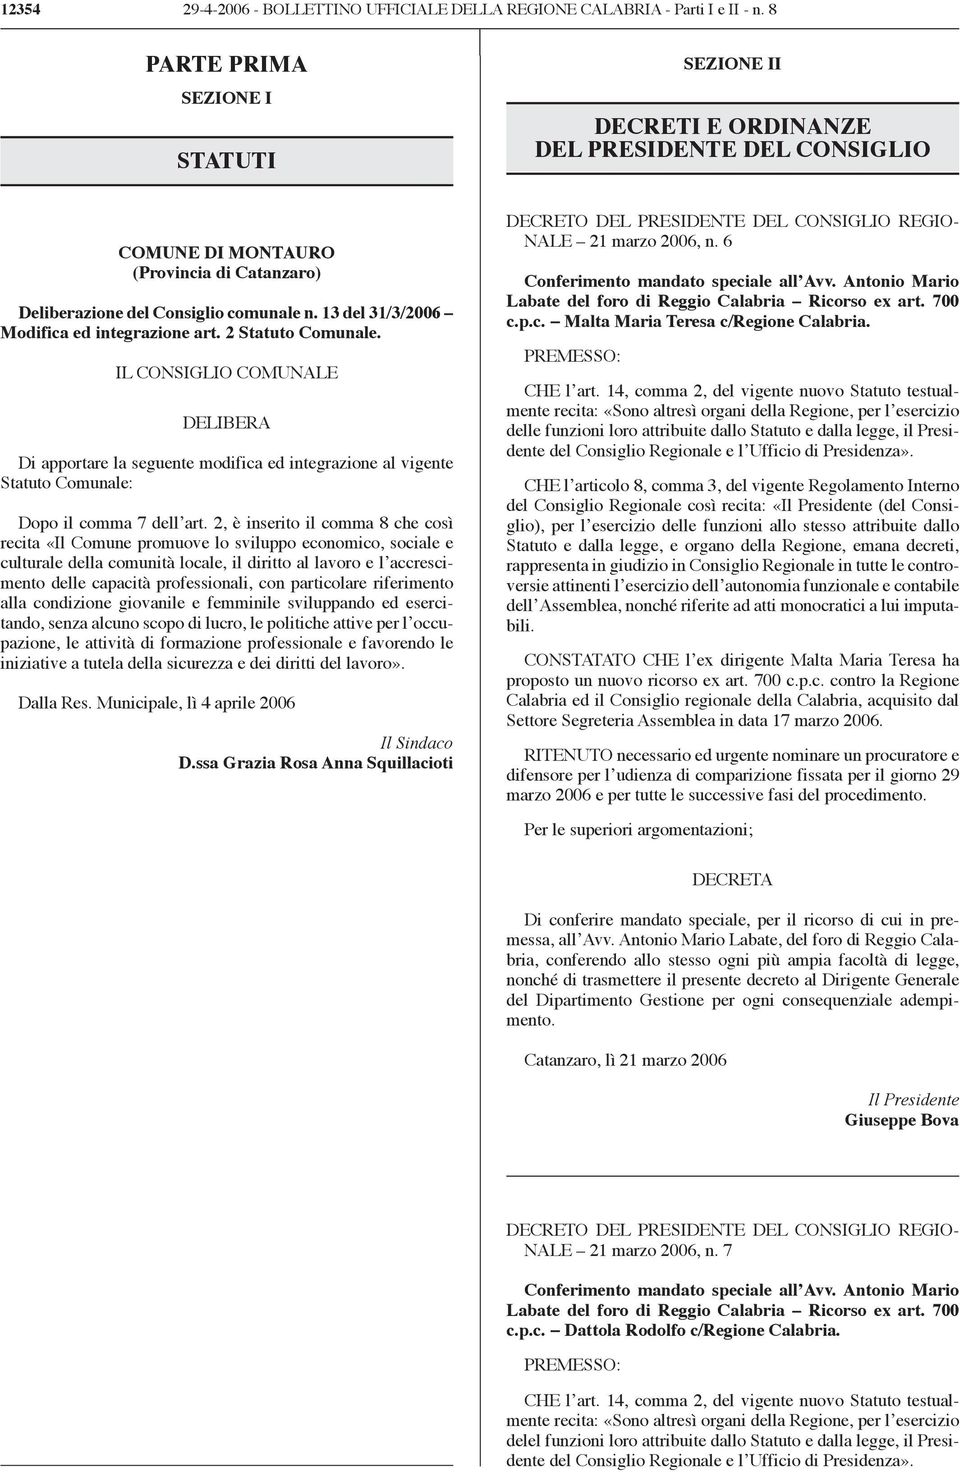 13 del 31/3/2006 Modifica ed integrazione art. 2 Statuto Comunale.